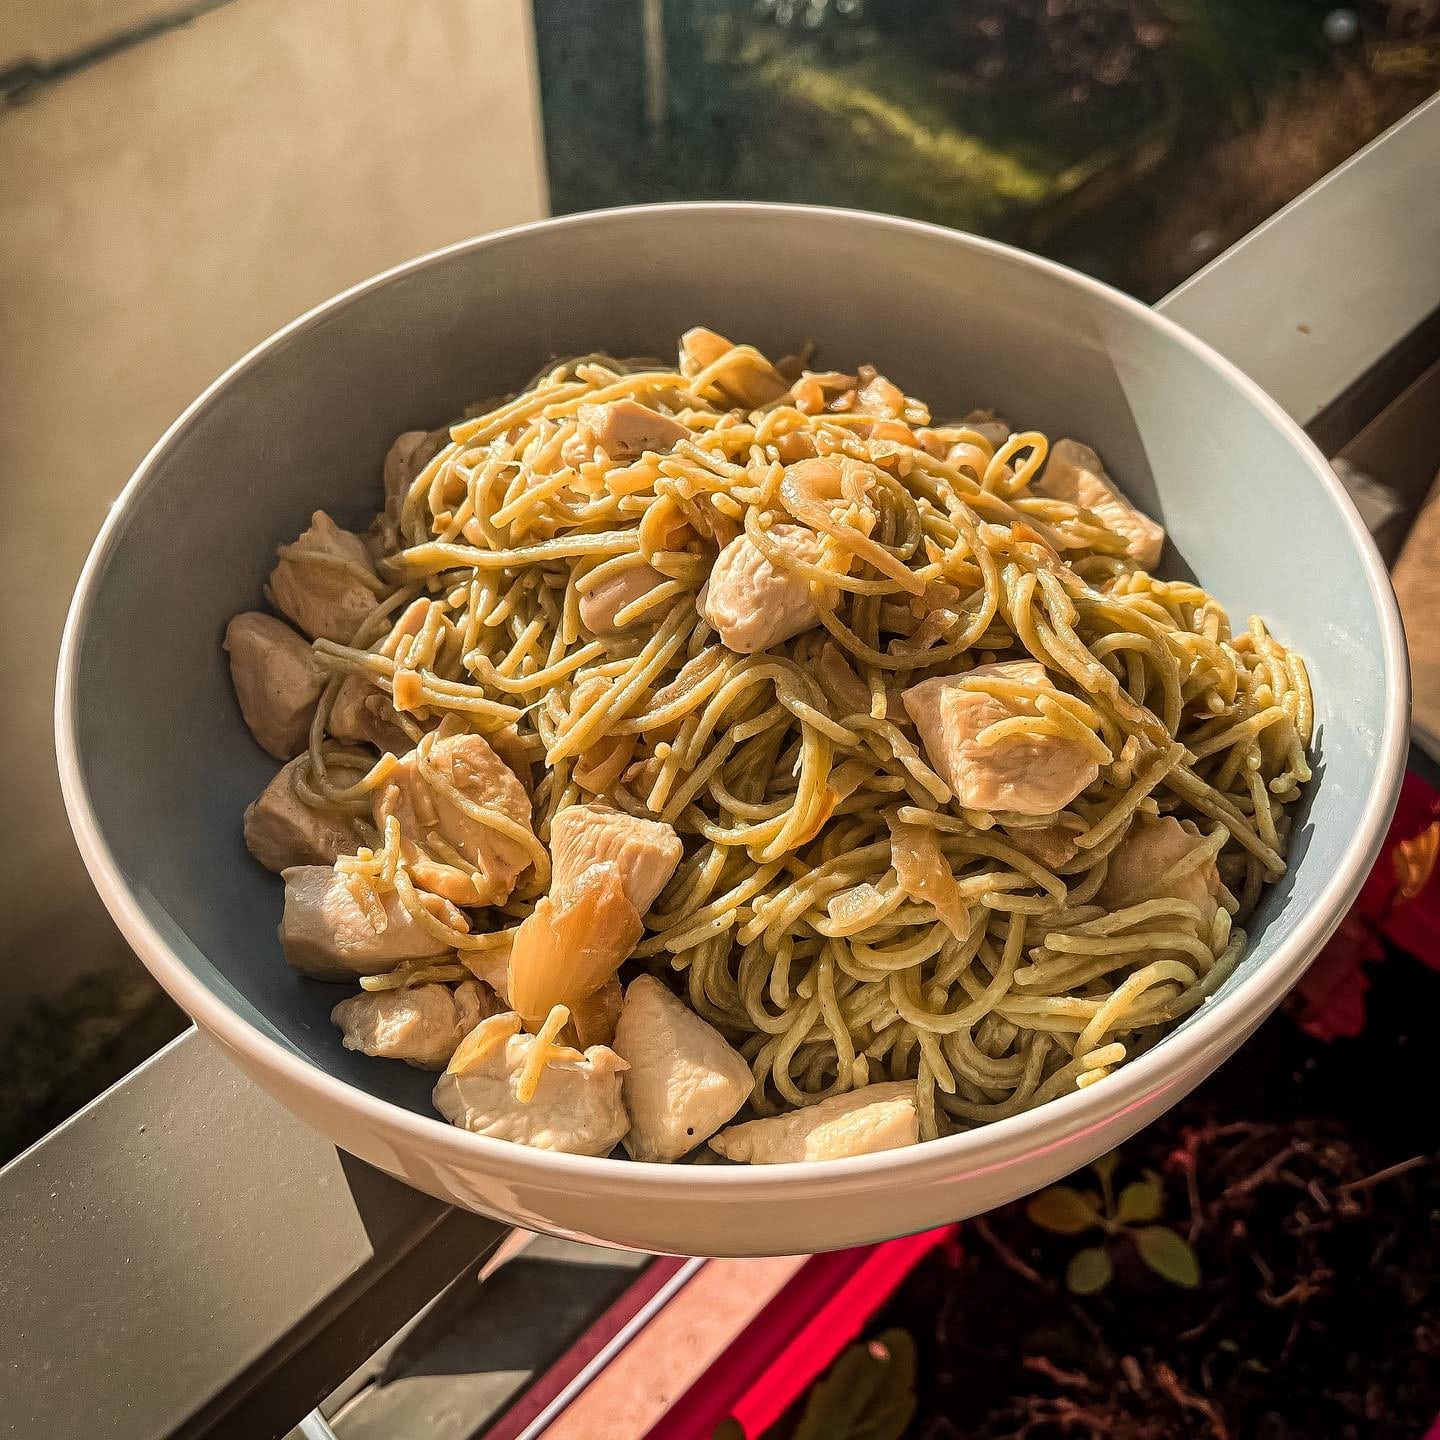 [𝙿𝚊𝚜𝚝𝚊 𝚙𝚎𝚜𝚝𝚘 🌿]

Retour sur ce plat de midi 😋 
Des pâtes au persil, pesto et basilic accompagnées de blancs de poulet 🐓 

————————————————————

#yummy #foodporn #foodlover #food #foodie #blogolyon #blogcuisine #lyon #igerslyon #pornfood #restolyon  #foodporn #recette #recettegourmande #pates #italianfood #cuisinemoi